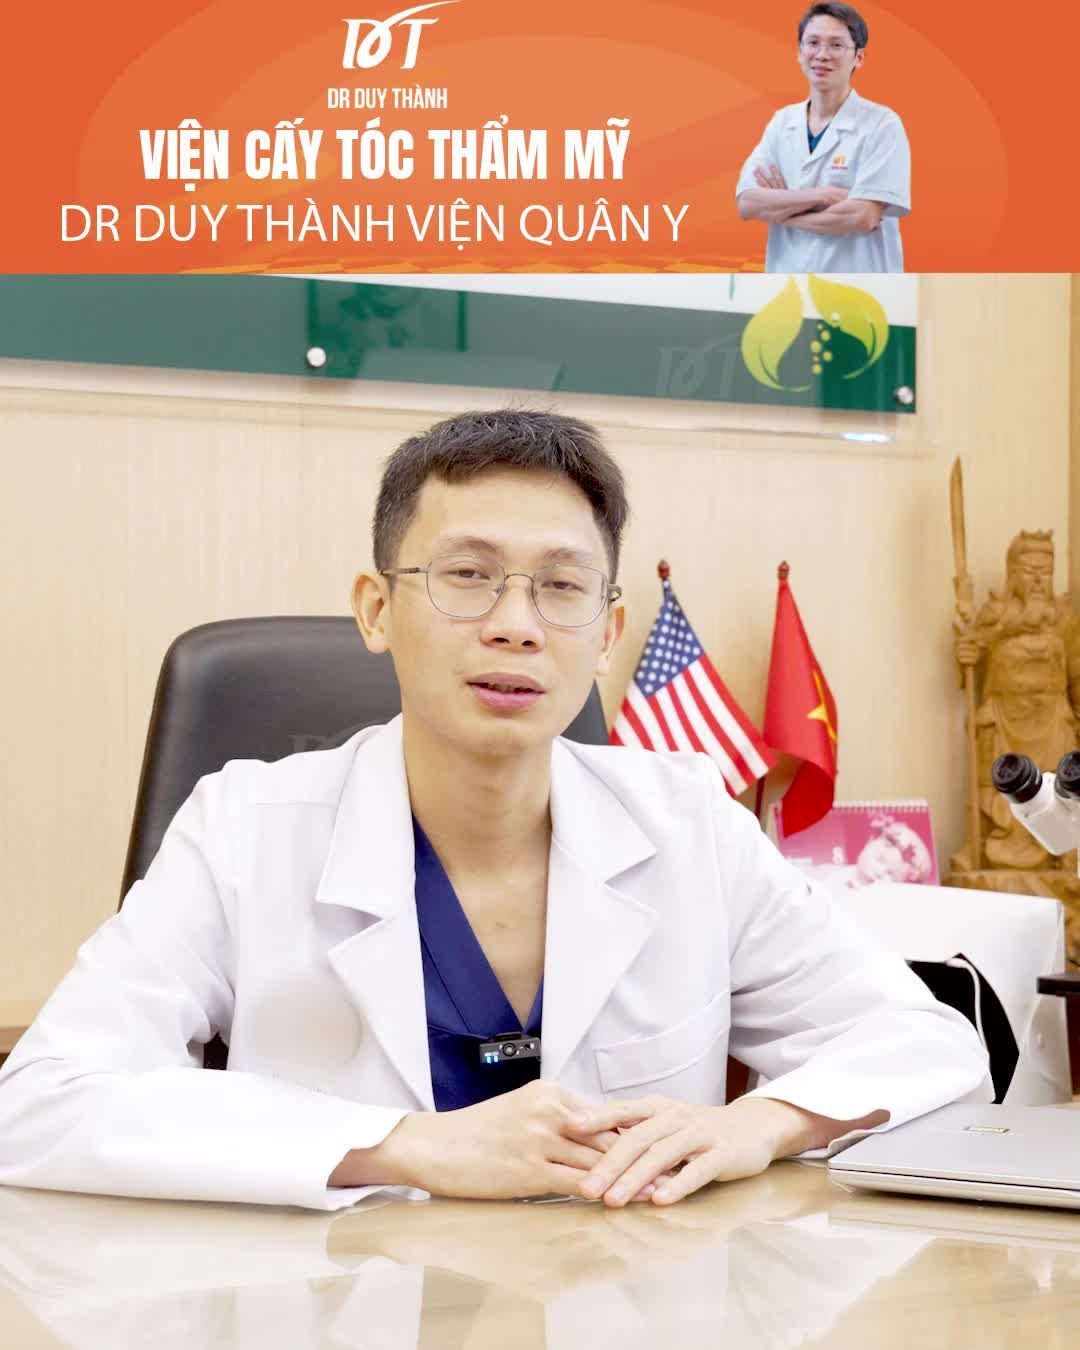 Dr Duy Thành phân tích case cấy tóc 2000 nang: trước và kết quả 6 tháng